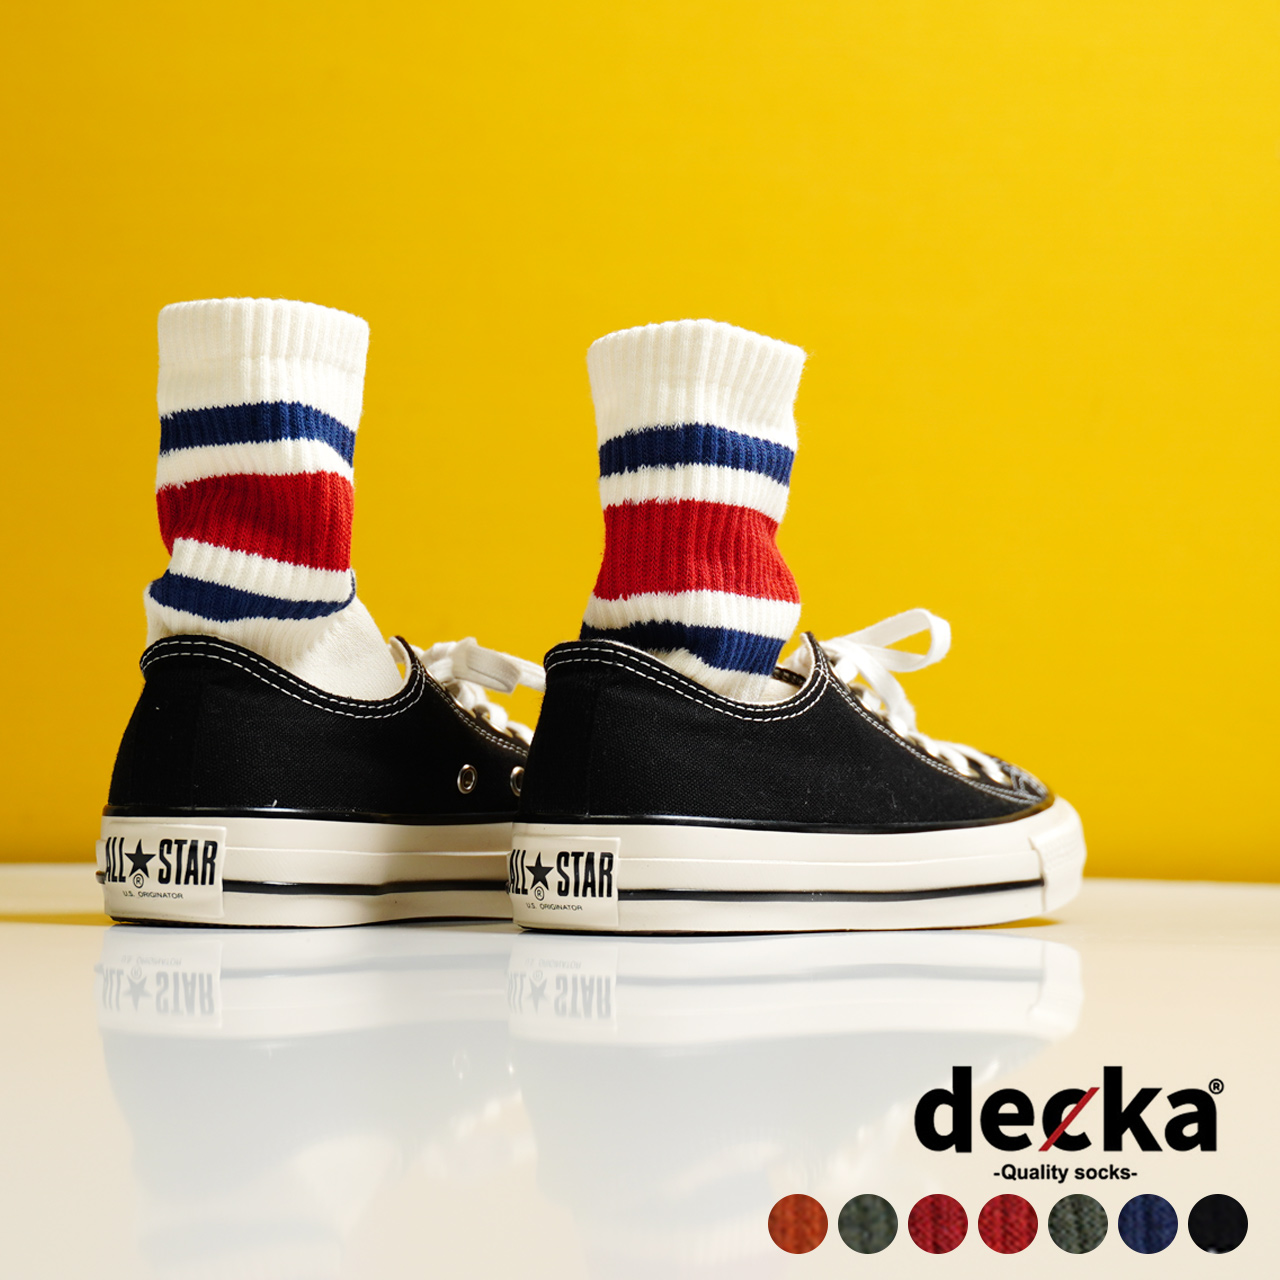 デカクオリティソックス decka Quality socks スケーター ソックス 80`s Skater Socks 靴下 ミドル丈 リブソックス ボーダー ストライプ メンズ レディース de-40 0530